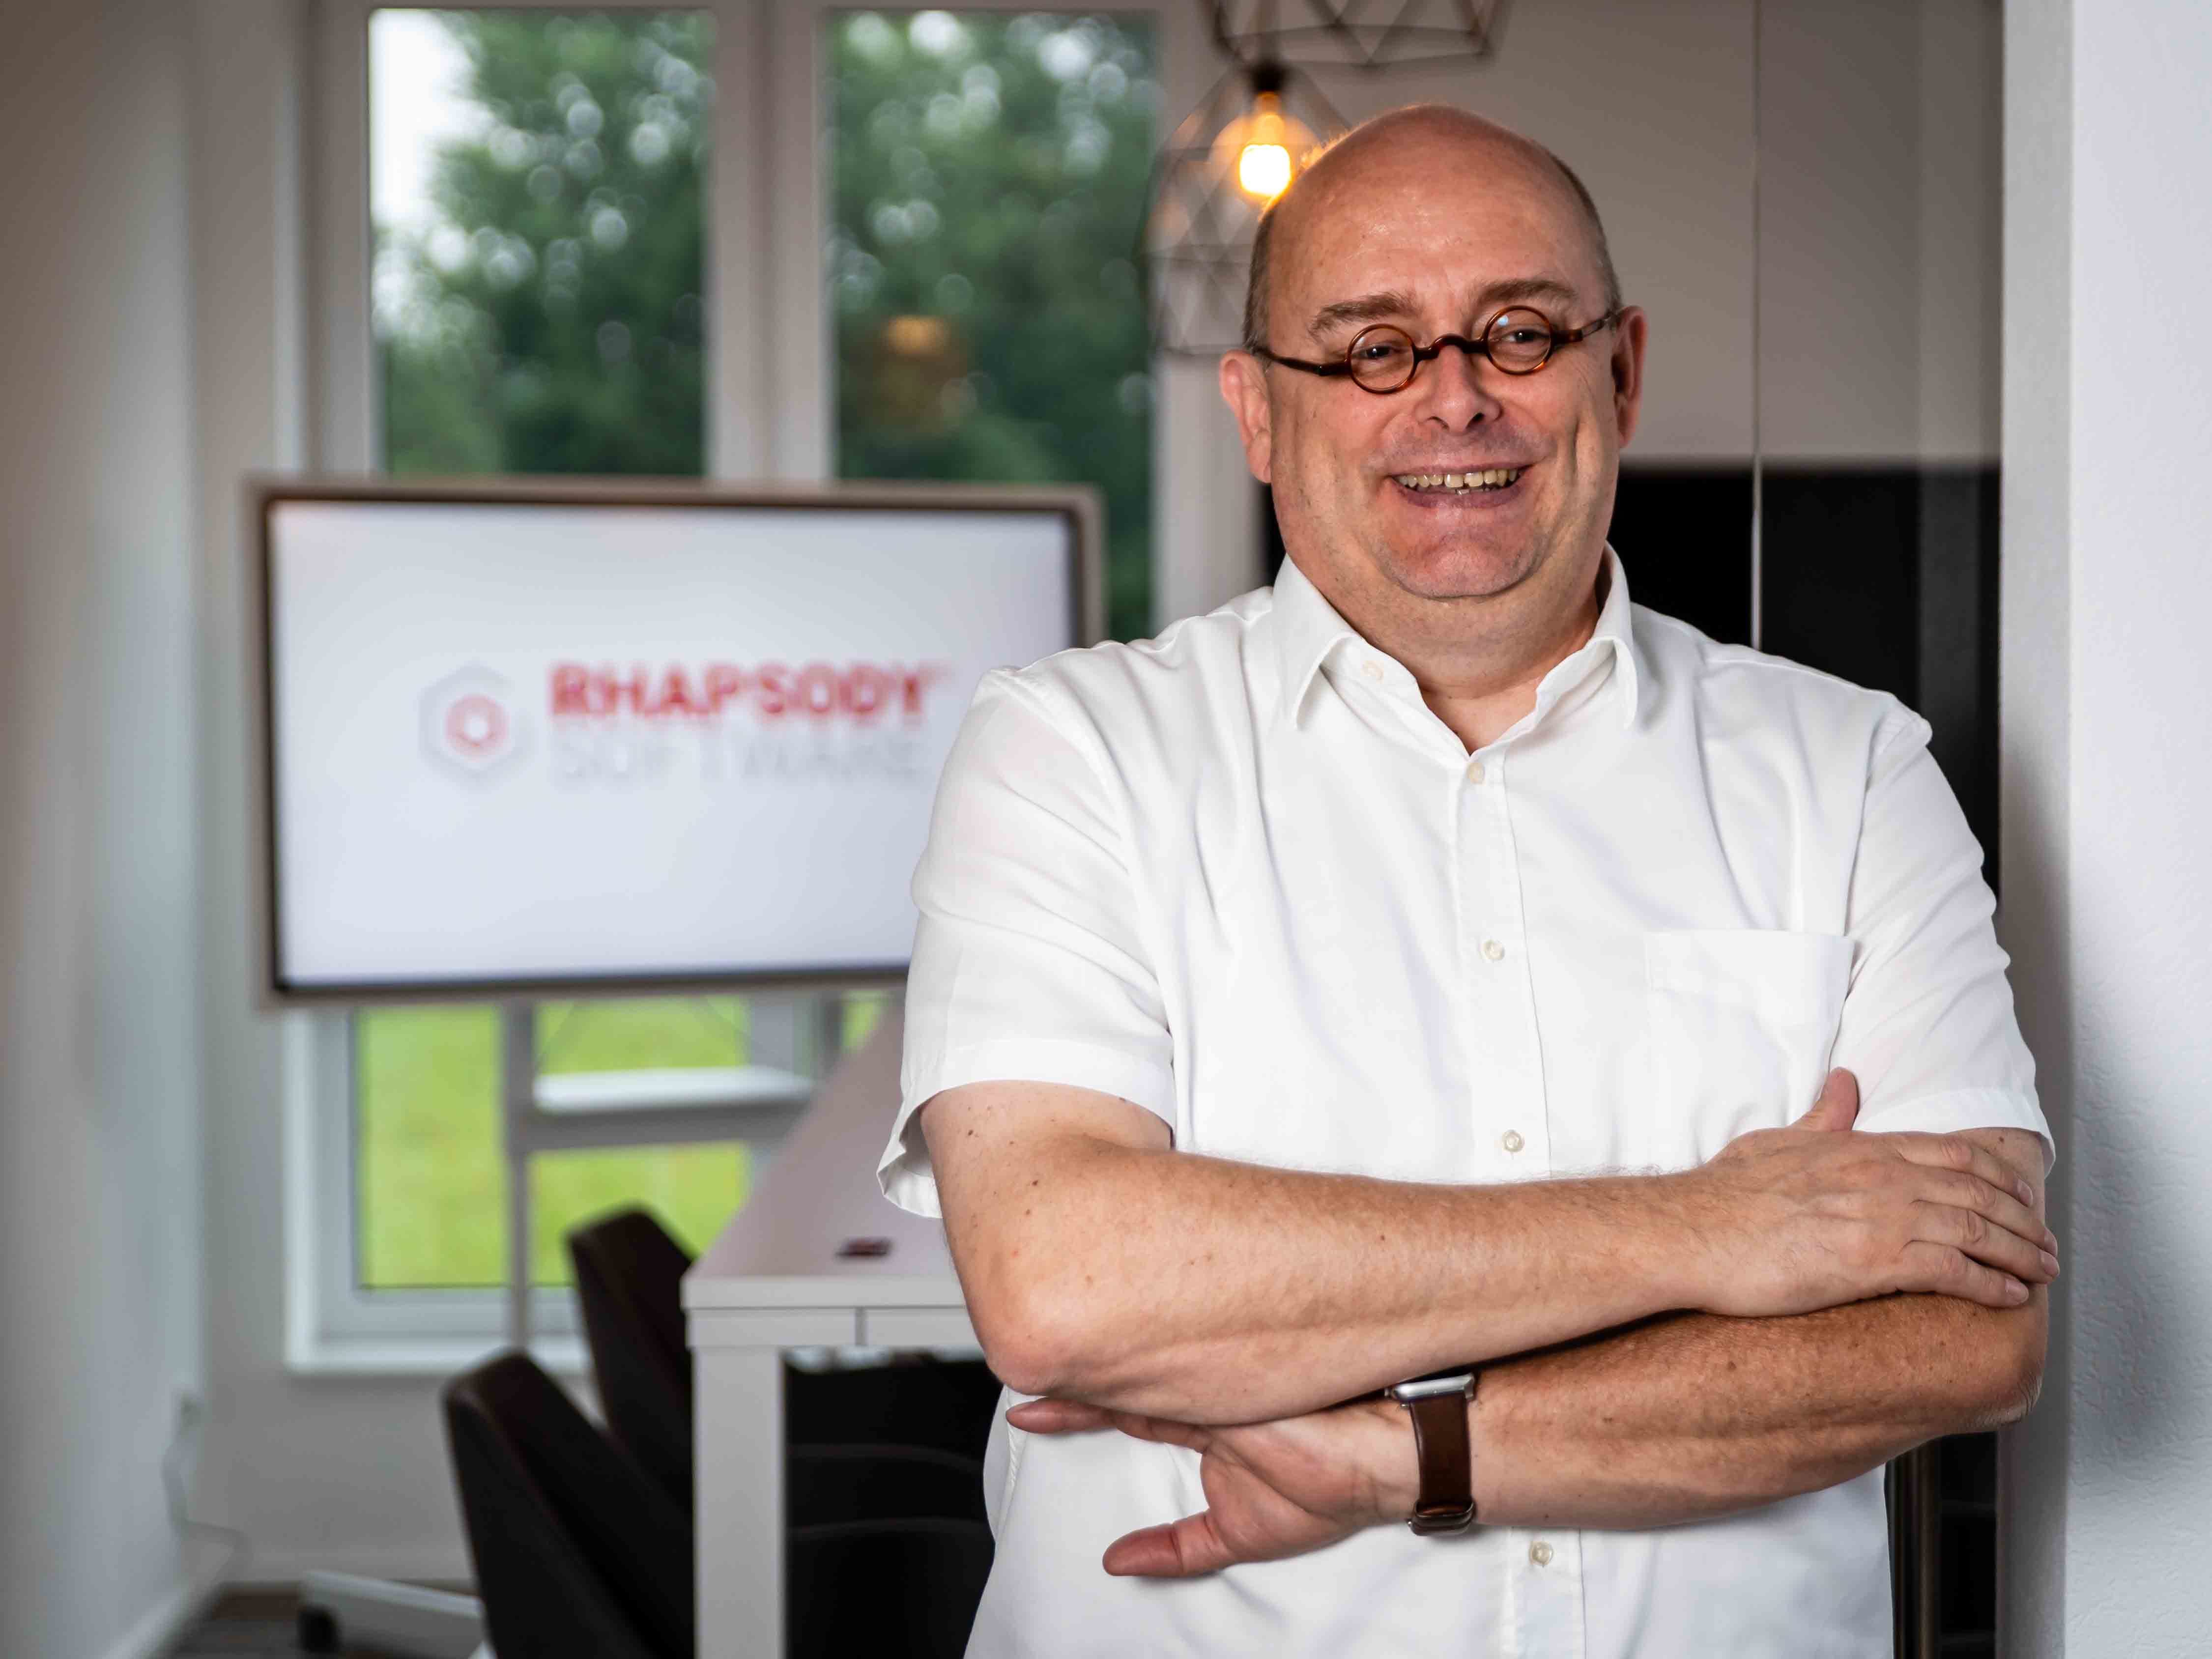 Geschäftsführer der RHAPSODY Software Solutions GmbH